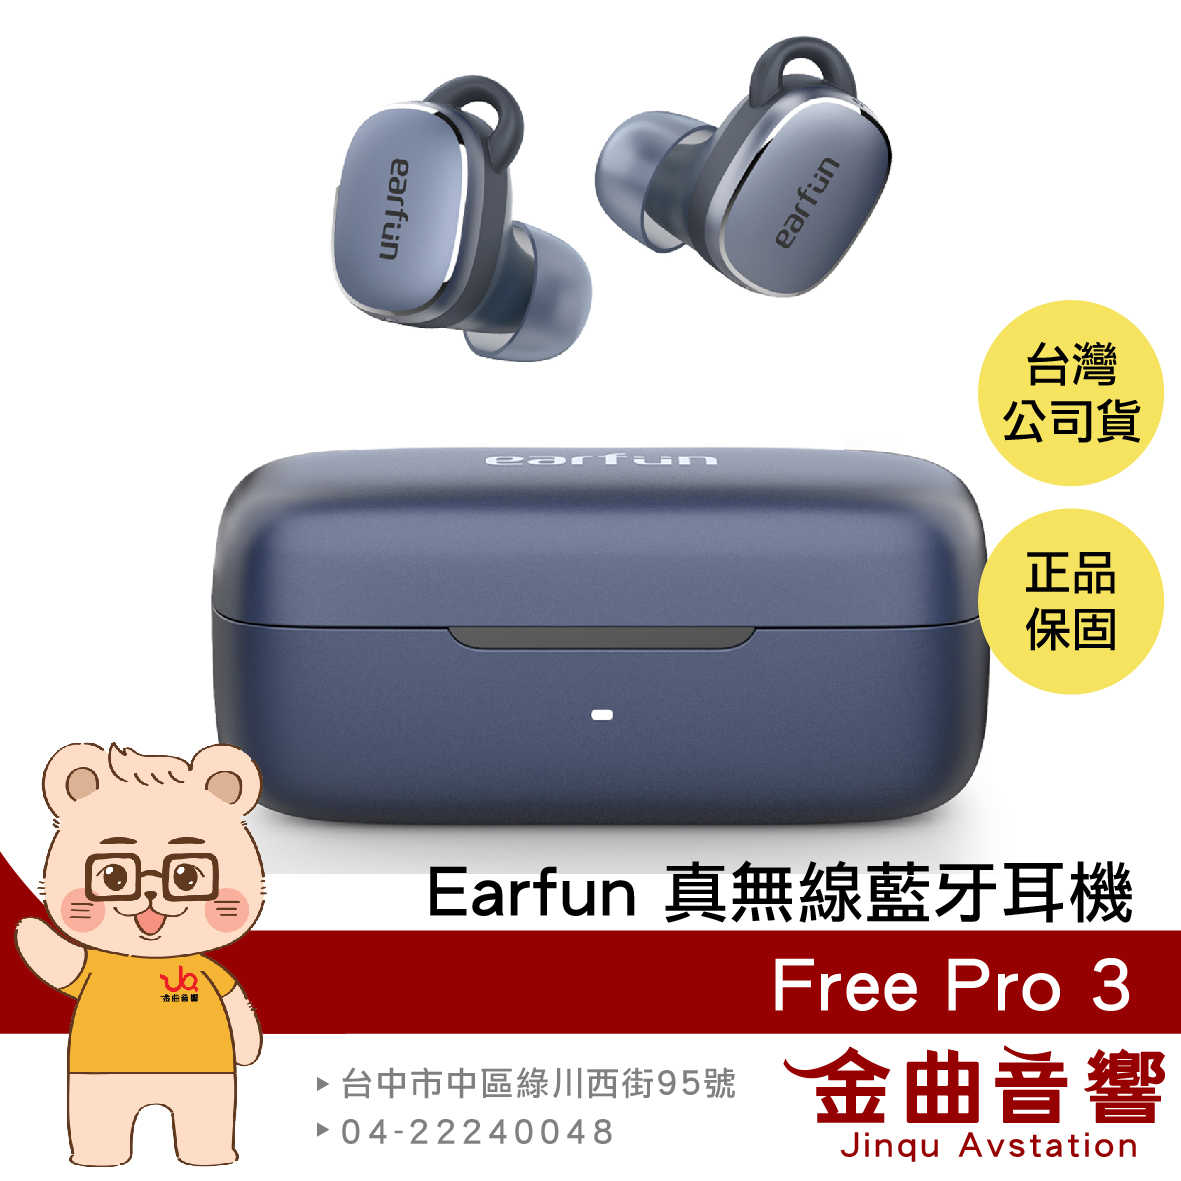 EarFun Free Pro 3 海軍藍 降噪 通透 7mm單體 IPX5 支援單耳 真無線 藍芽耳機 | 金曲音響